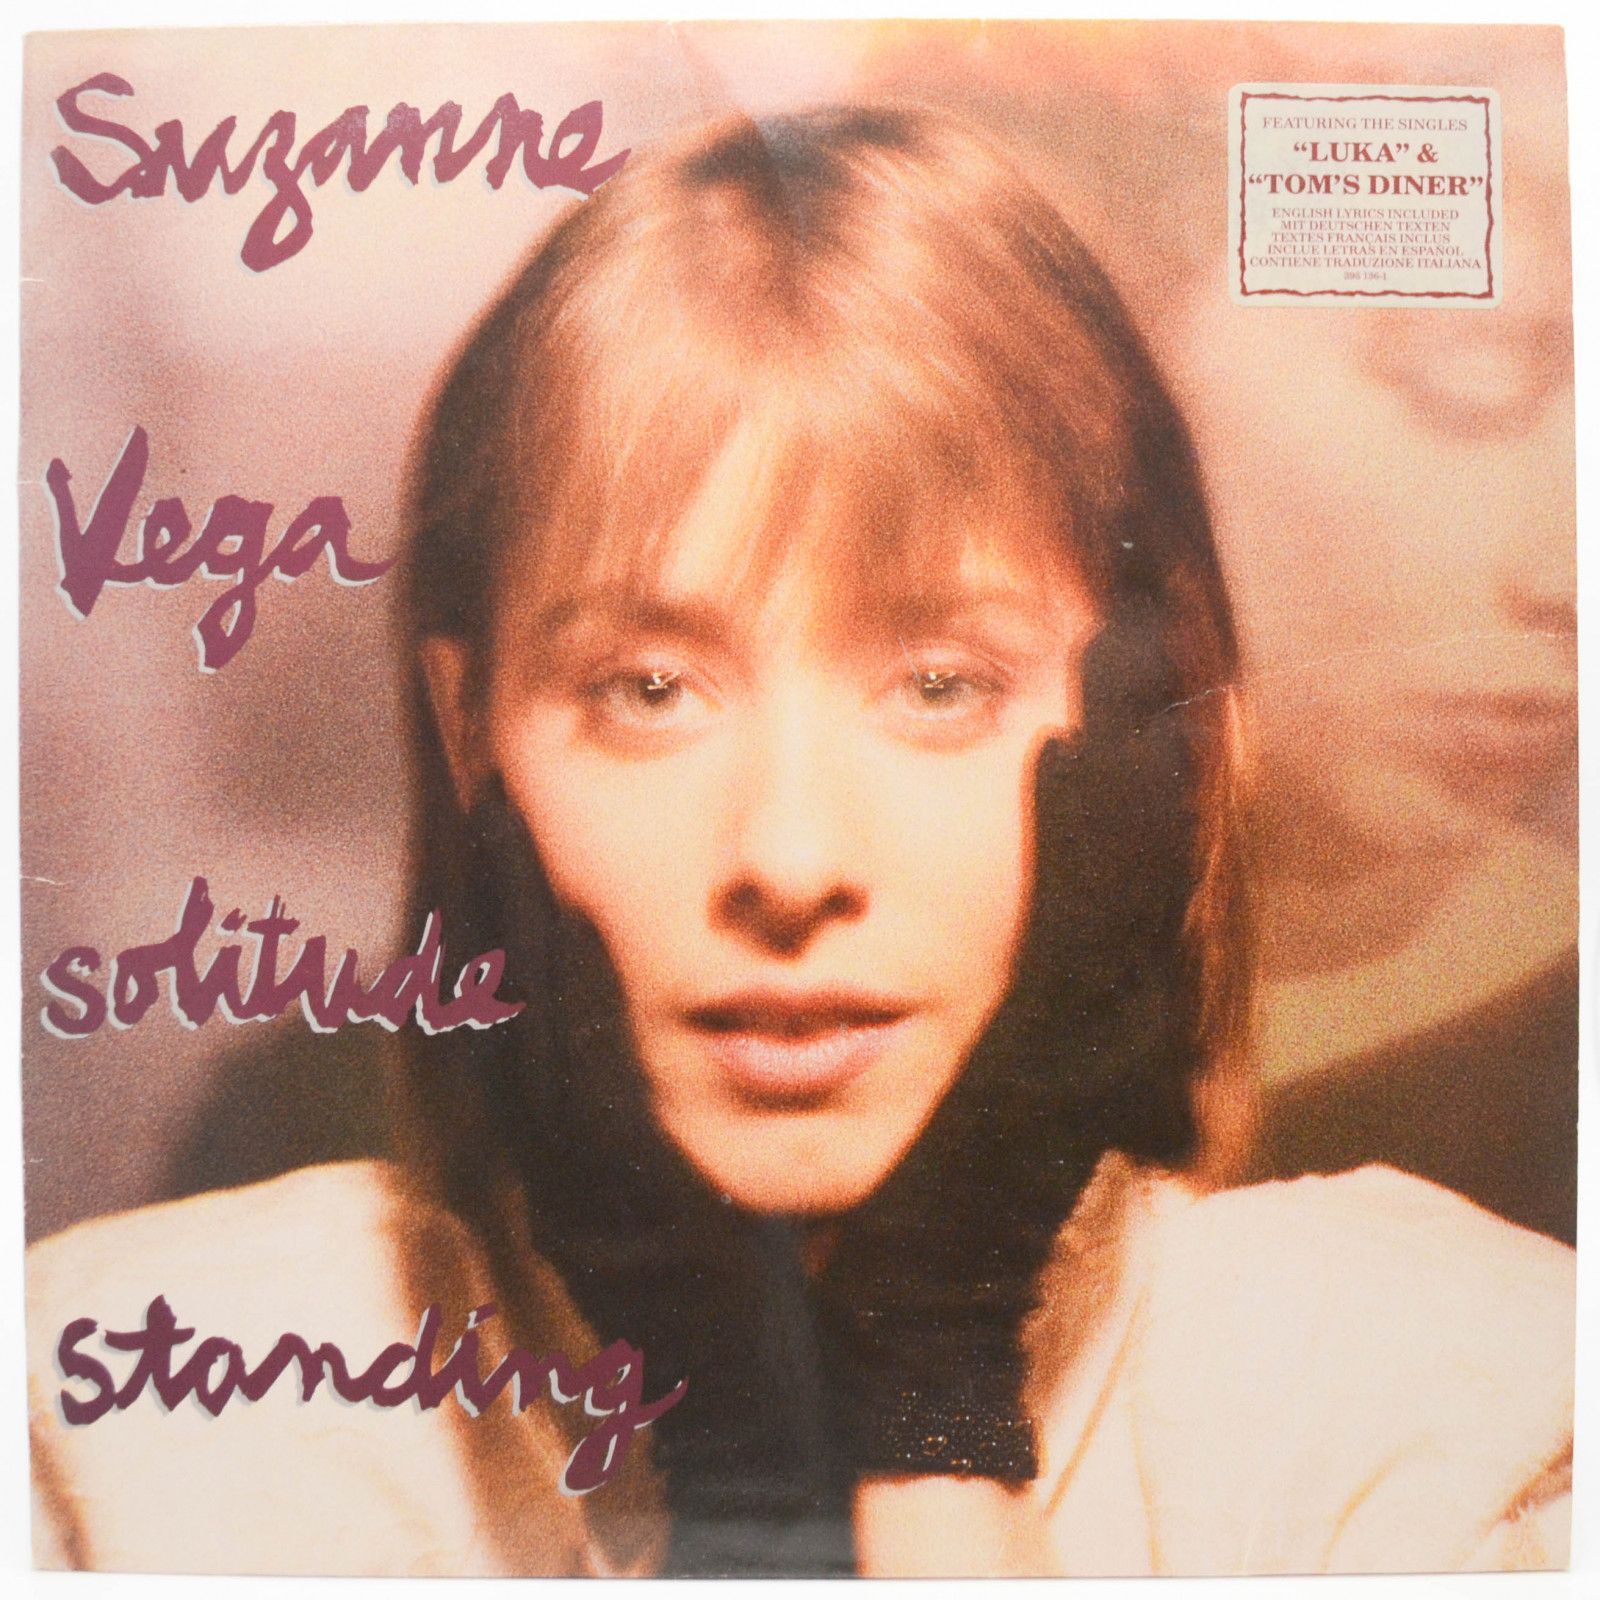 Suzanne Vega — Solitude Standing, 1987